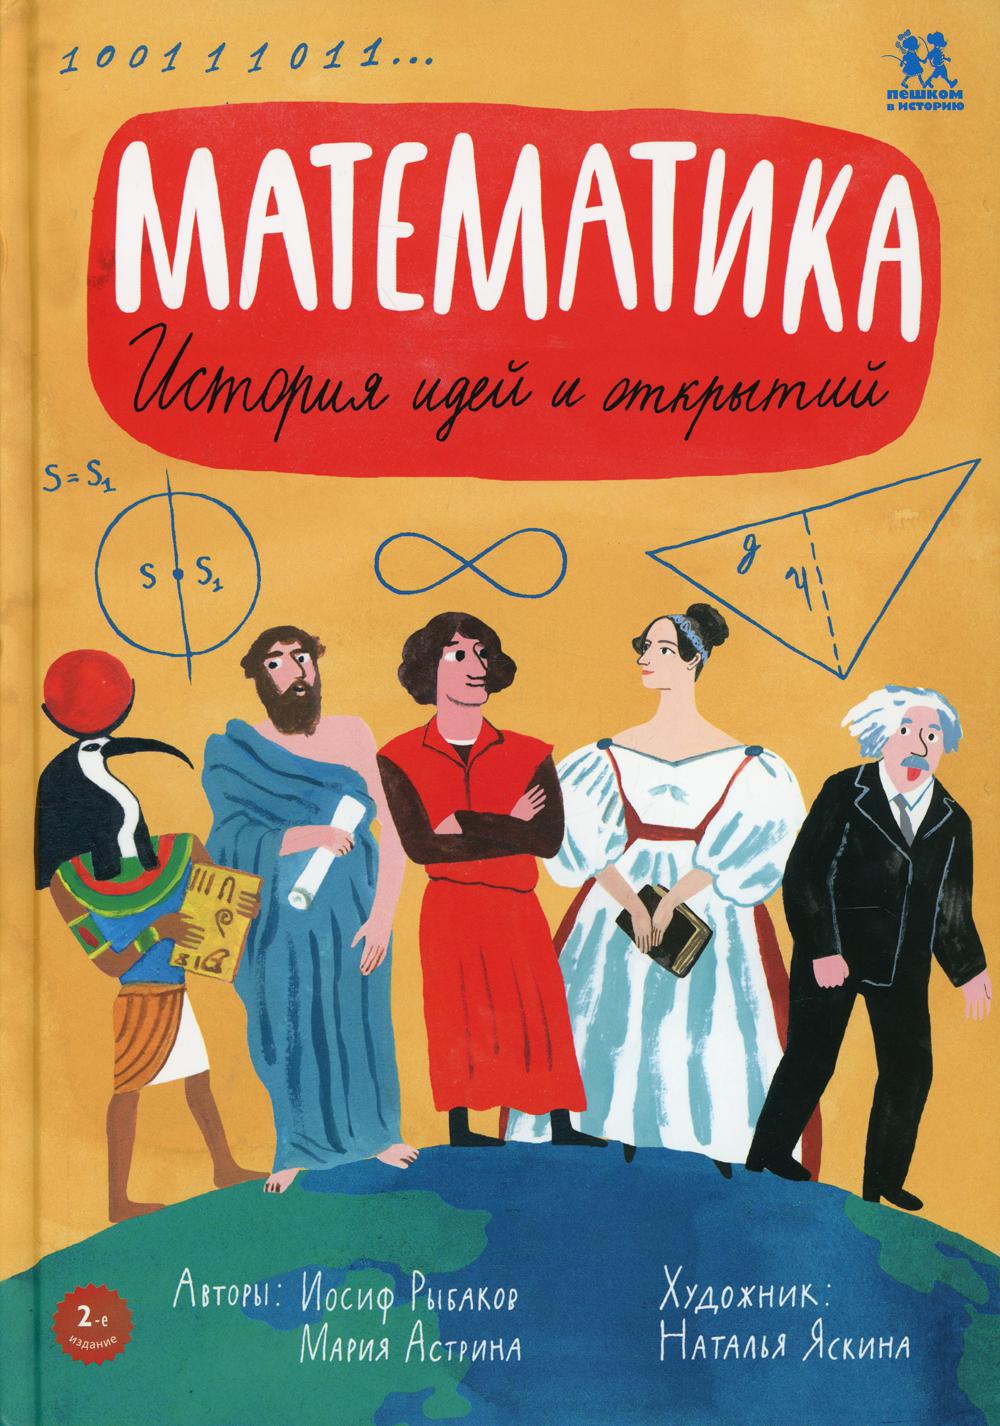 фото Книга математика: история идей и открытий пешком в историю